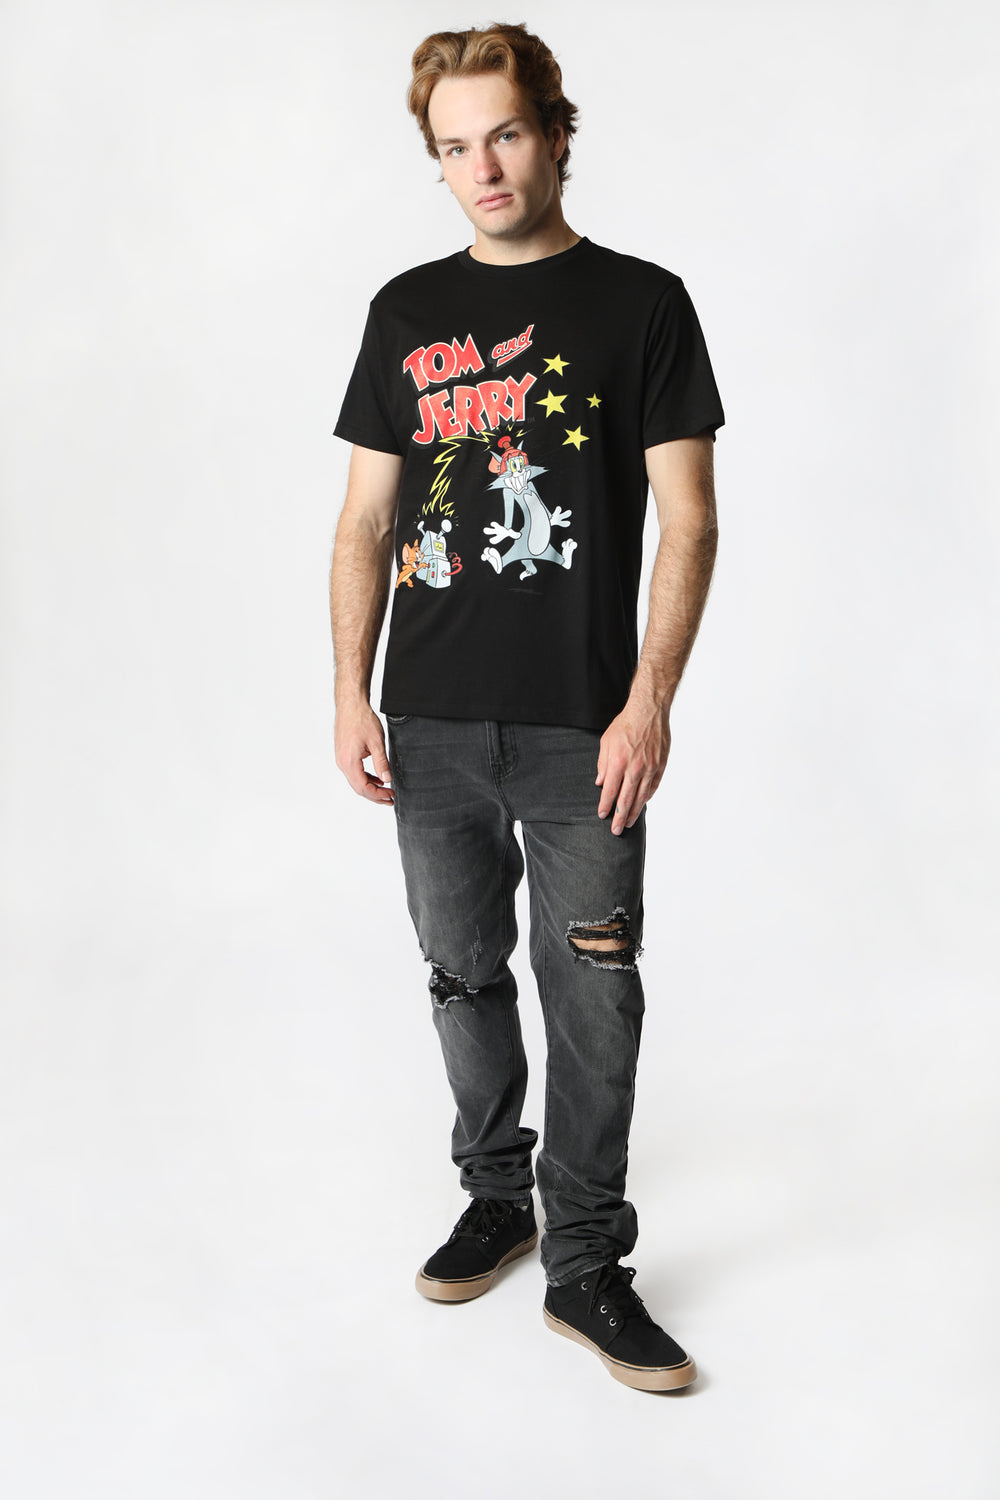 T-Shirt Imprimé Tom et Jerry Homme Noir